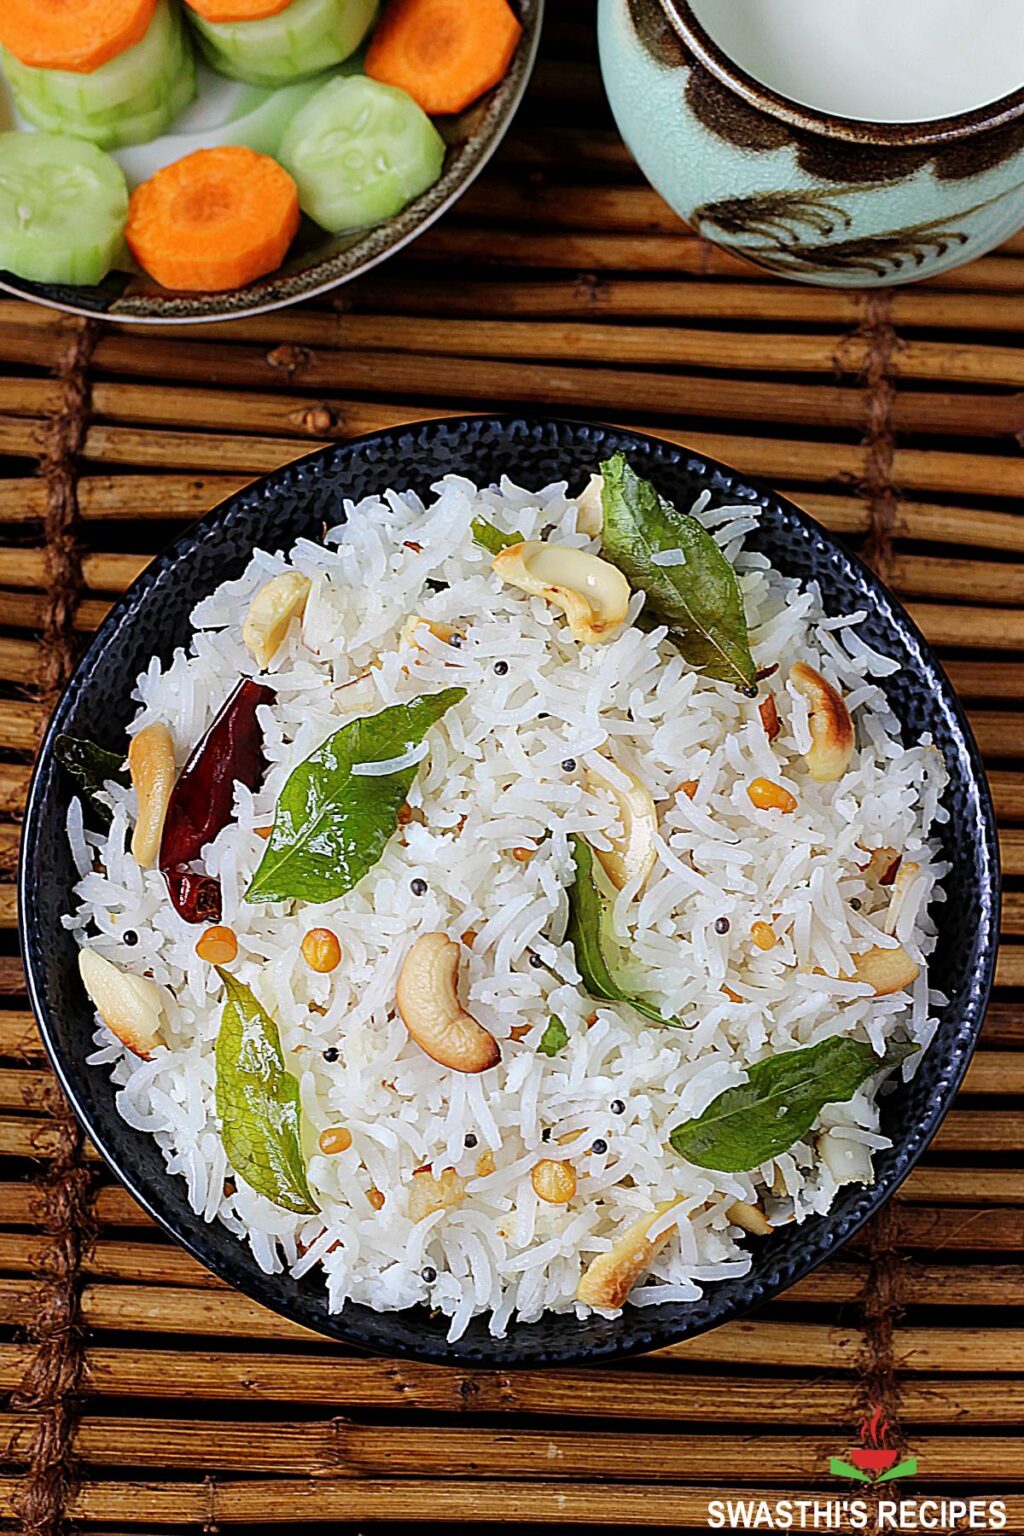 Coconut rice recipe (Thengai sadam) - Swasthi's Recipes